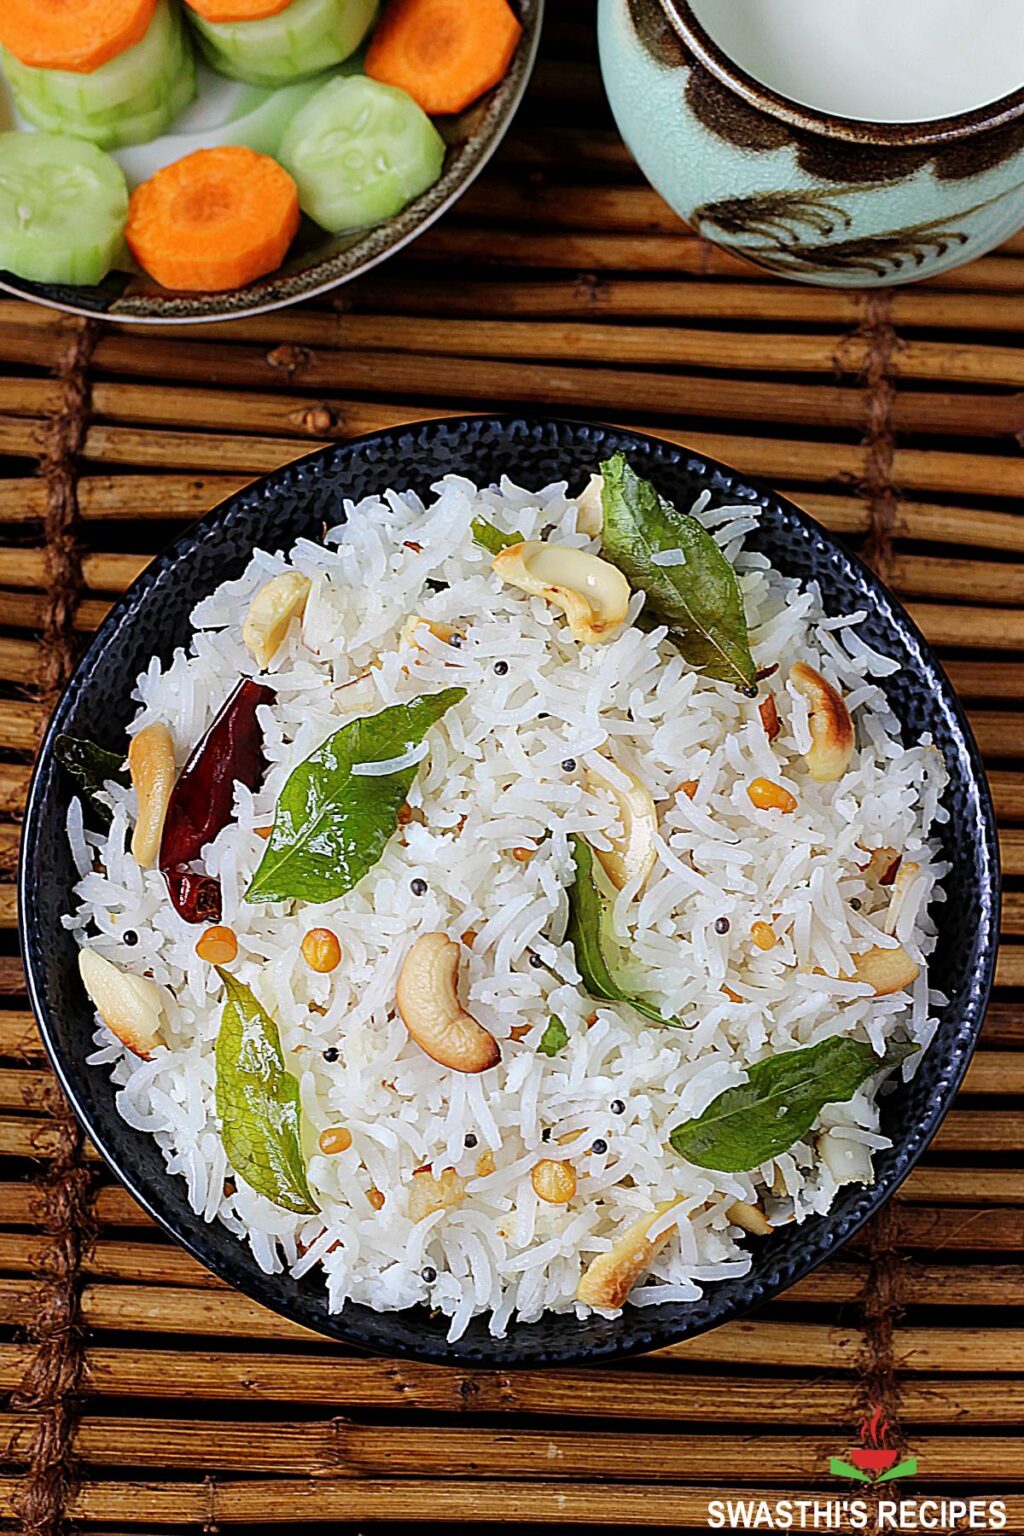 Coconut rice recipe (Thengai sadam) - Swasthi's Recipes